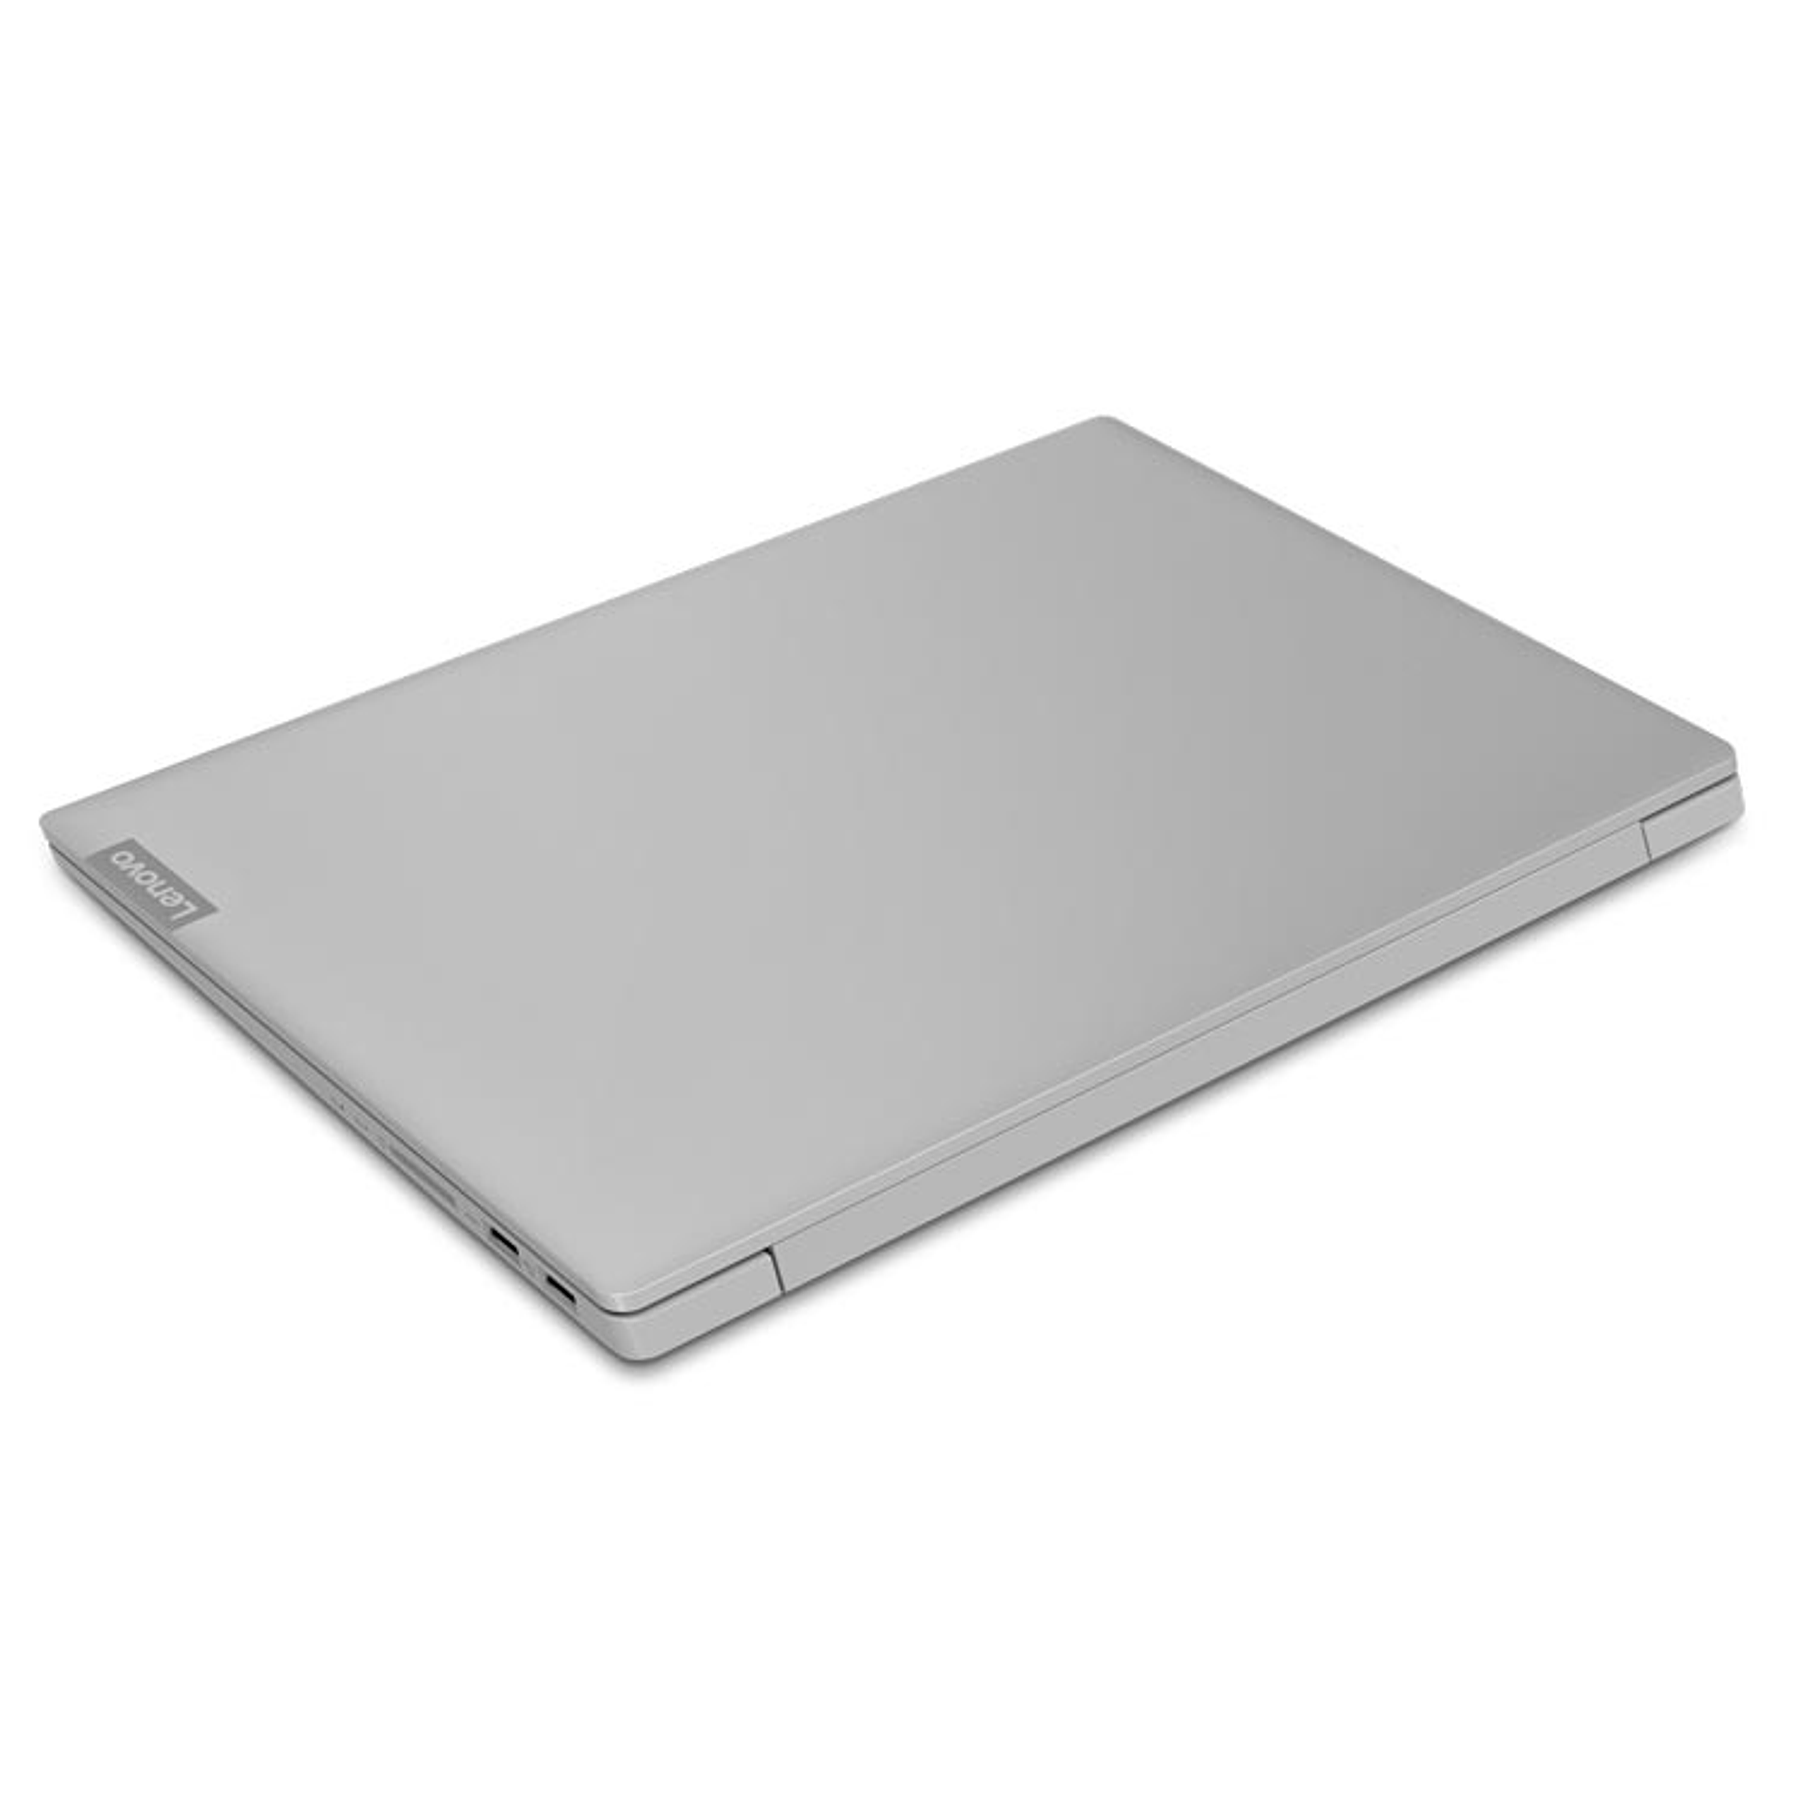 Lenovo S145 IdeaPad Notebook Core i3